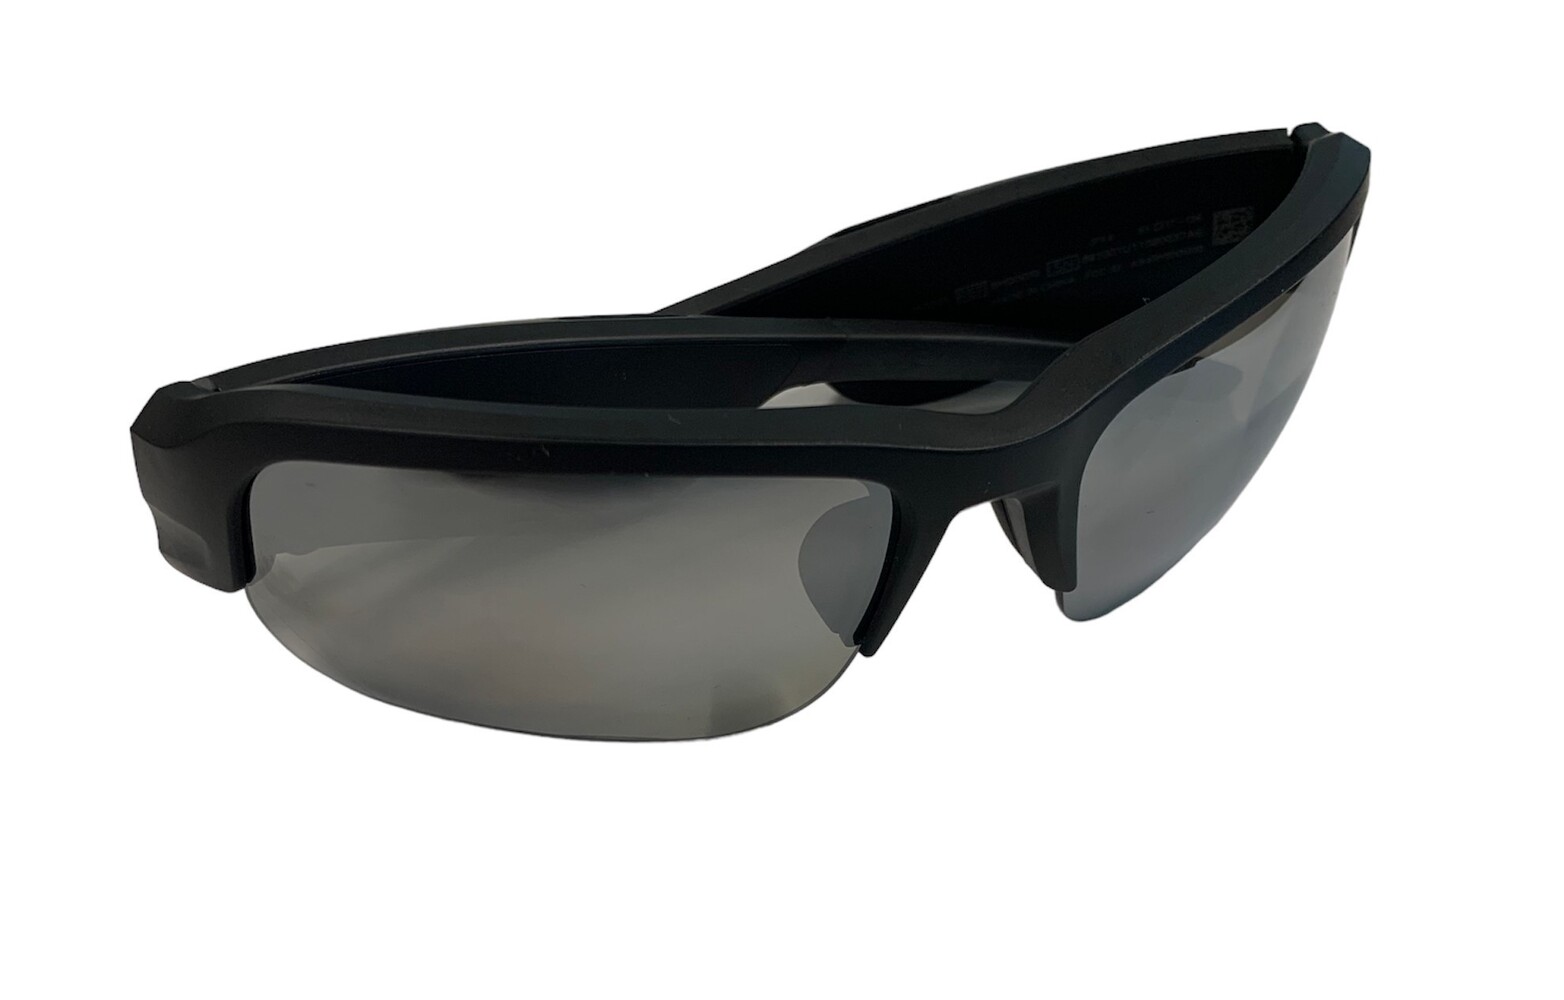 Bose - Frames Tempo  Sports Audio Sunglasses with Polarized Lenses - Black